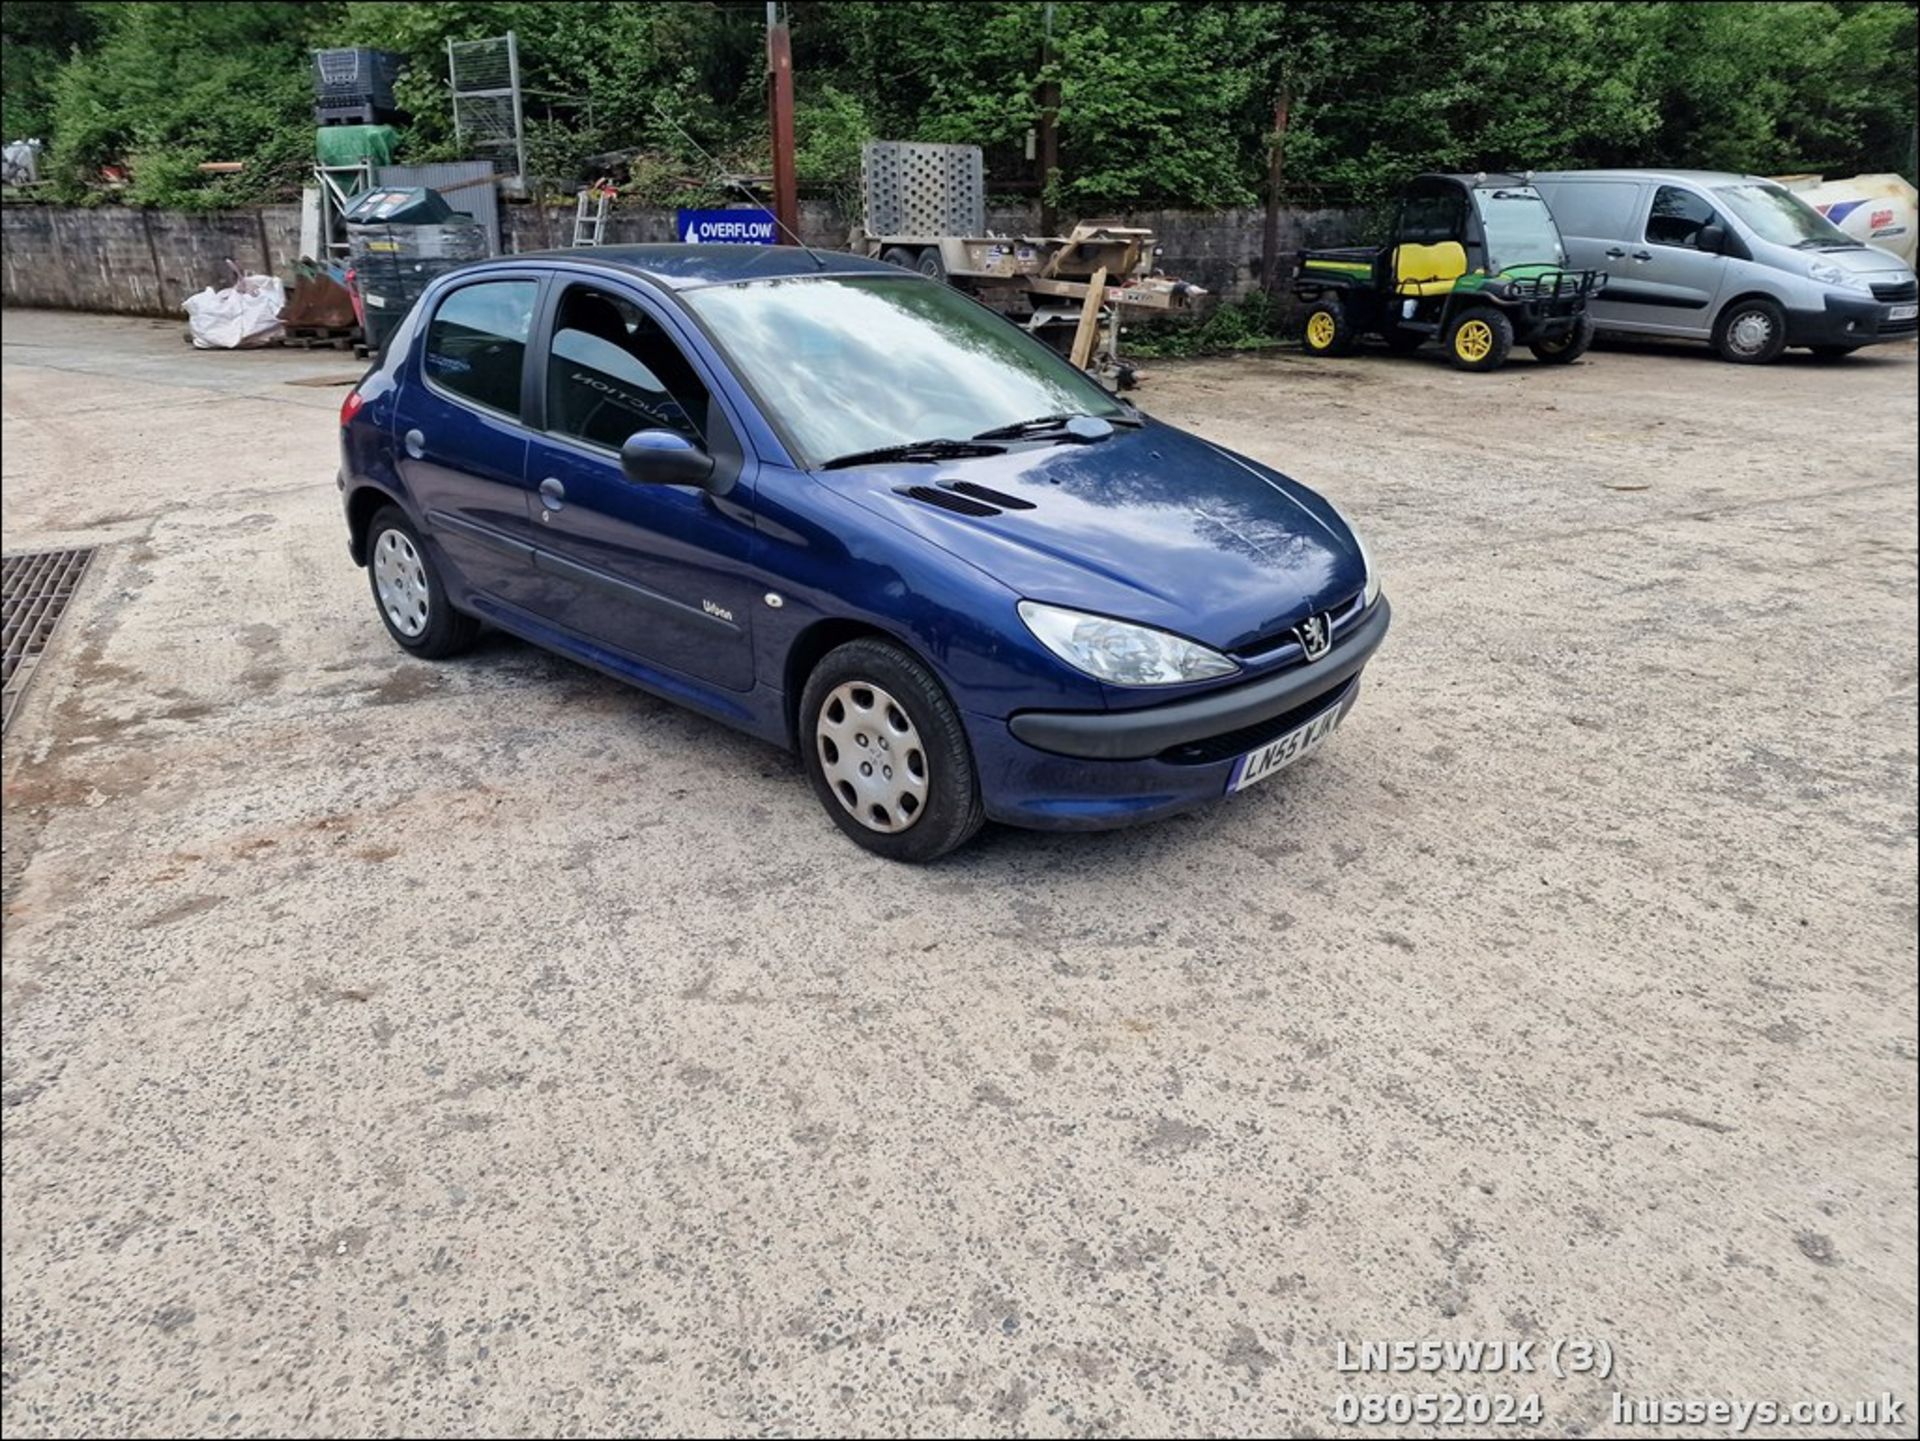 06/55 PEUGEOT 206 URBAN HDI - 1398cc 5dr Hatchback (Blue, 165k) - Image 4 of 32